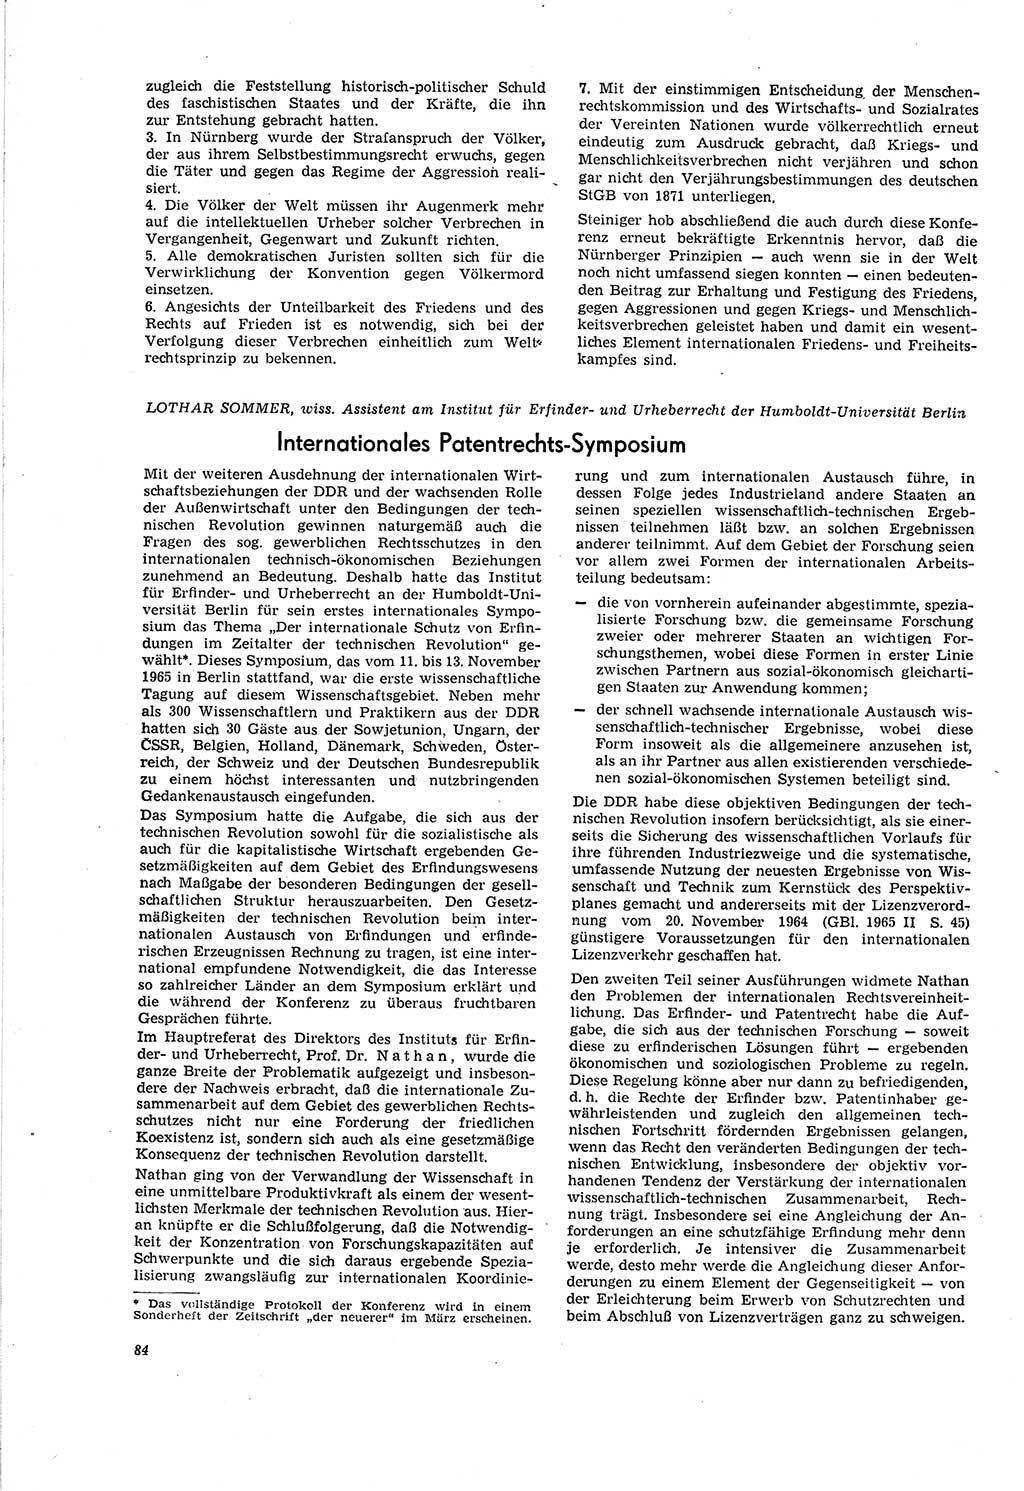 Neue Justiz (NJ), Zeitschrift für Recht und Rechtswissenschaft [Deutsche Demokratische Republik (DDR)], 20. Jahrgang 1966, Seite 84 (NJ DDR 1966, S. 84)